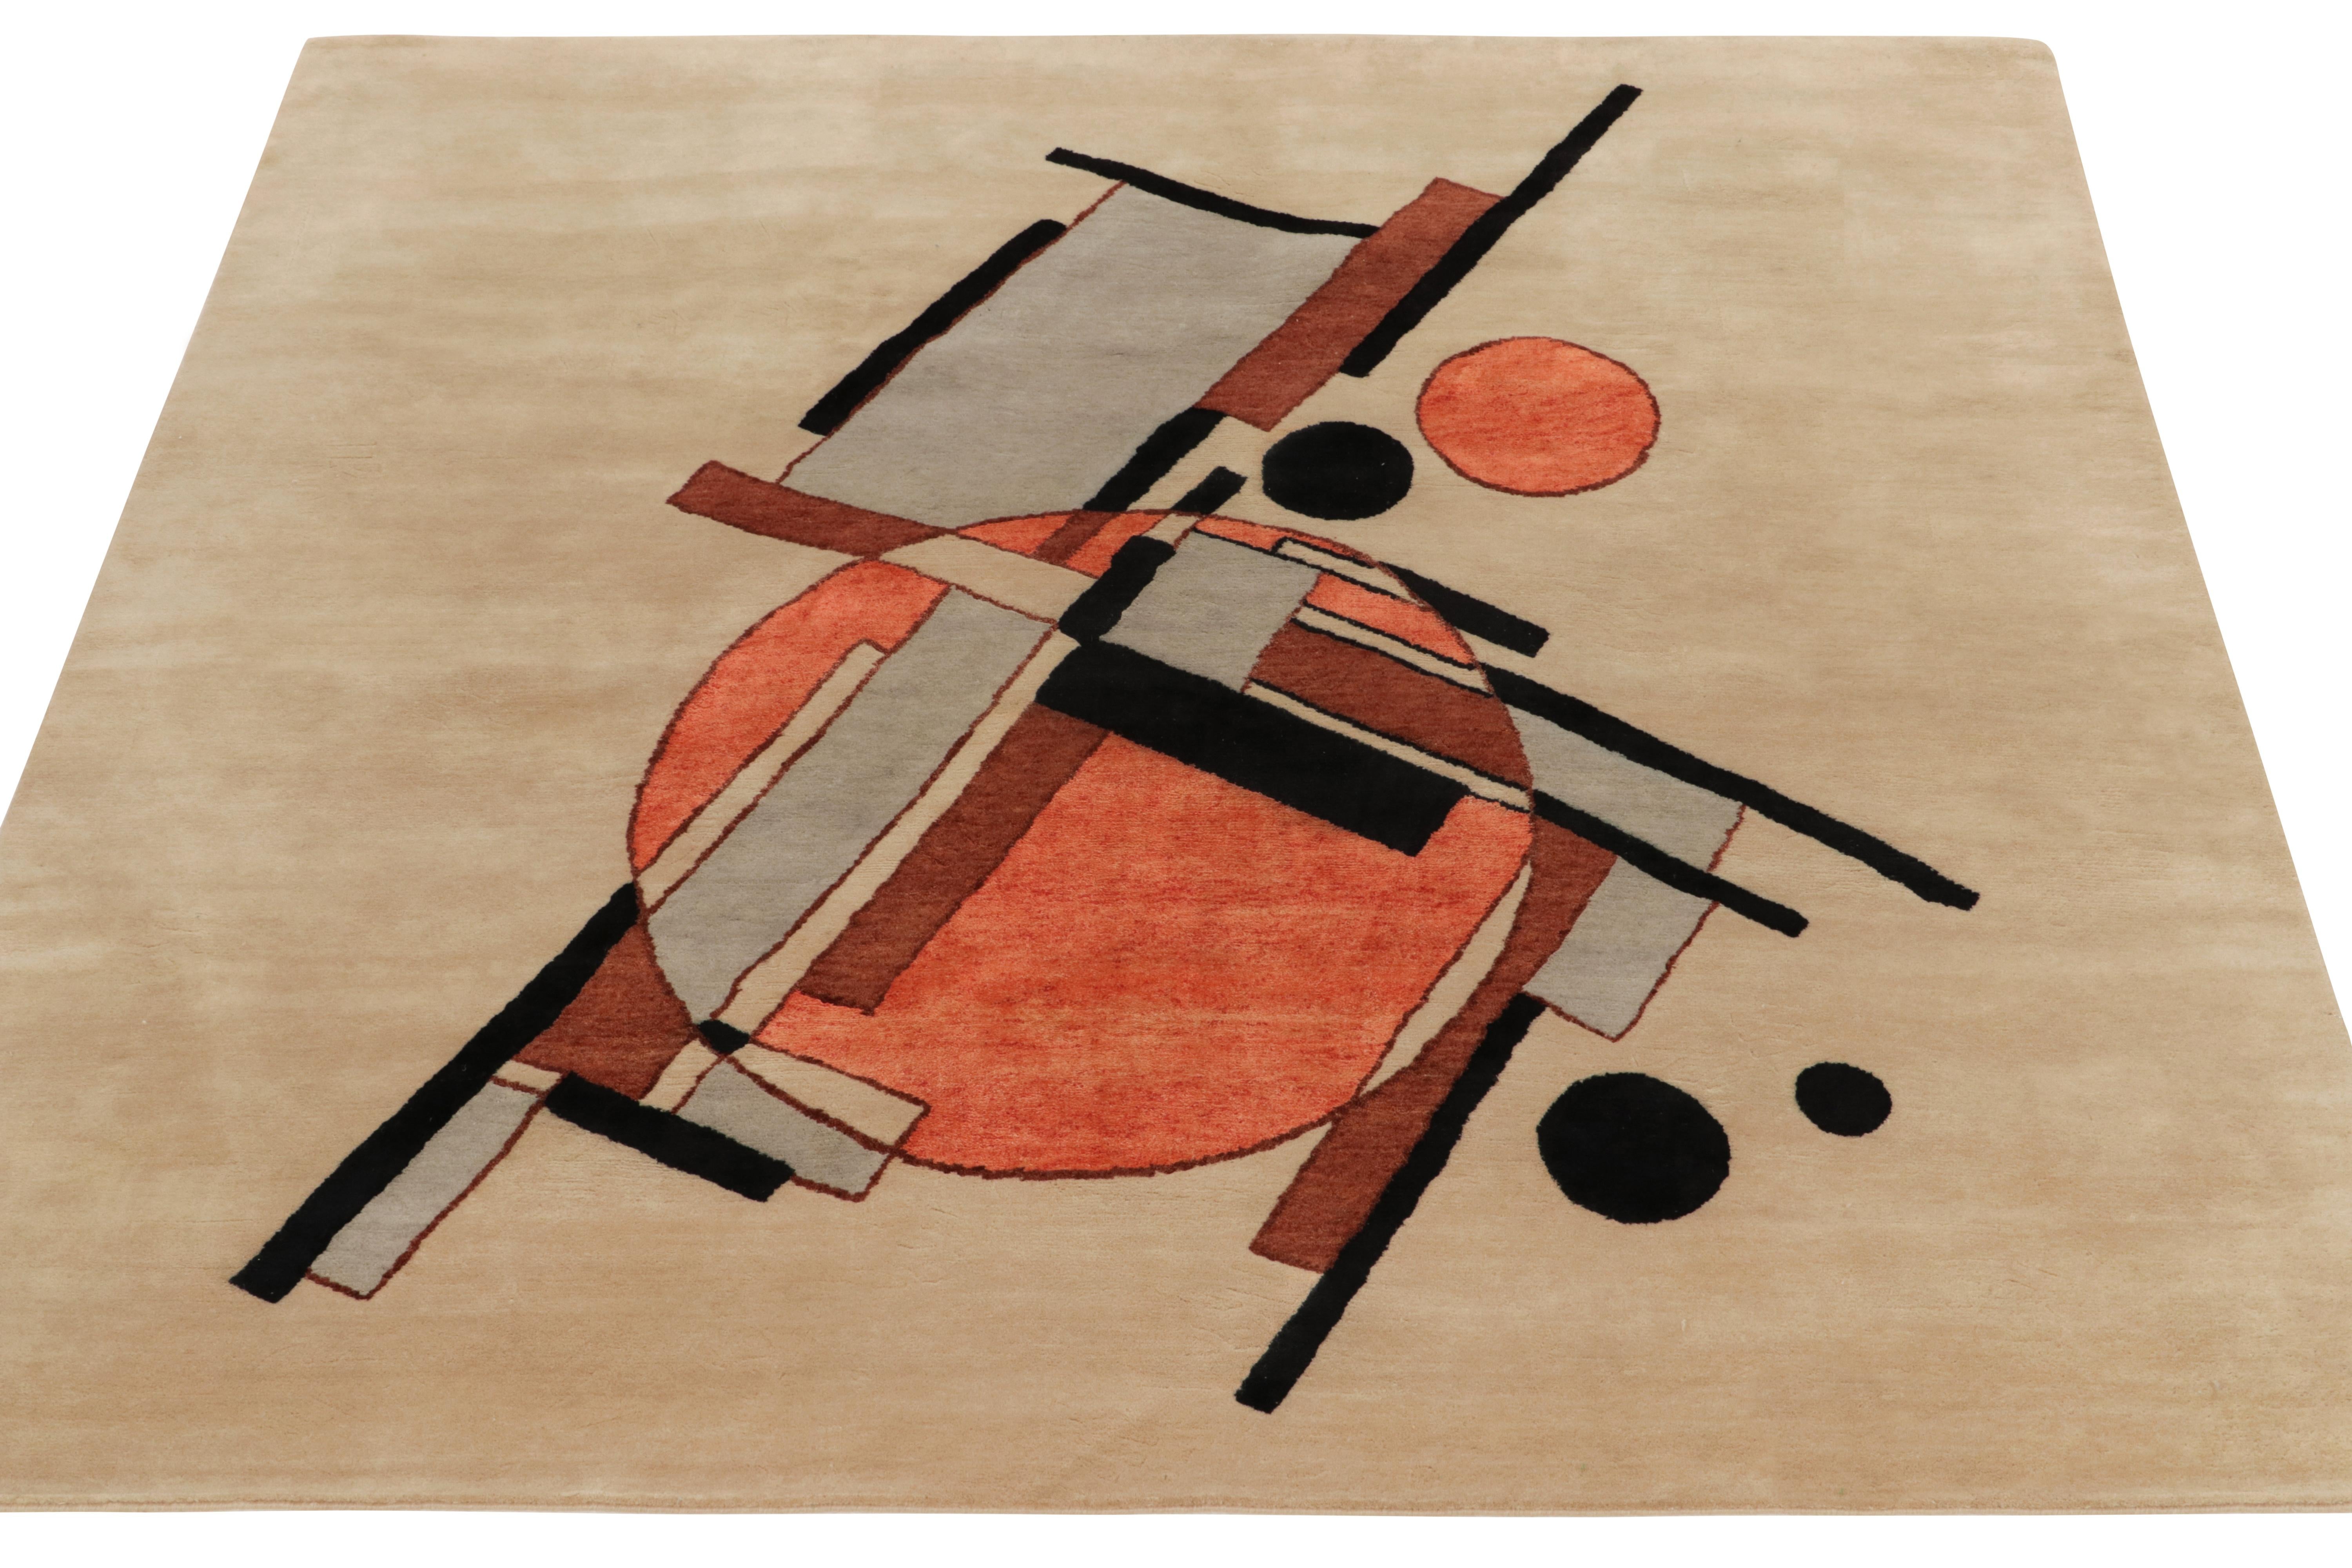 Ein 7x7 großes zeitgenössisches Stück aus der Deco-Kollektion von Rug & Kilim, inspiriert von den Werken Kasimir Malewitschs im Stil des Suprematismus. Die quadratische Vorstellungskraft experimentiert mit Überlagerungen in der hohen Kunst, die in